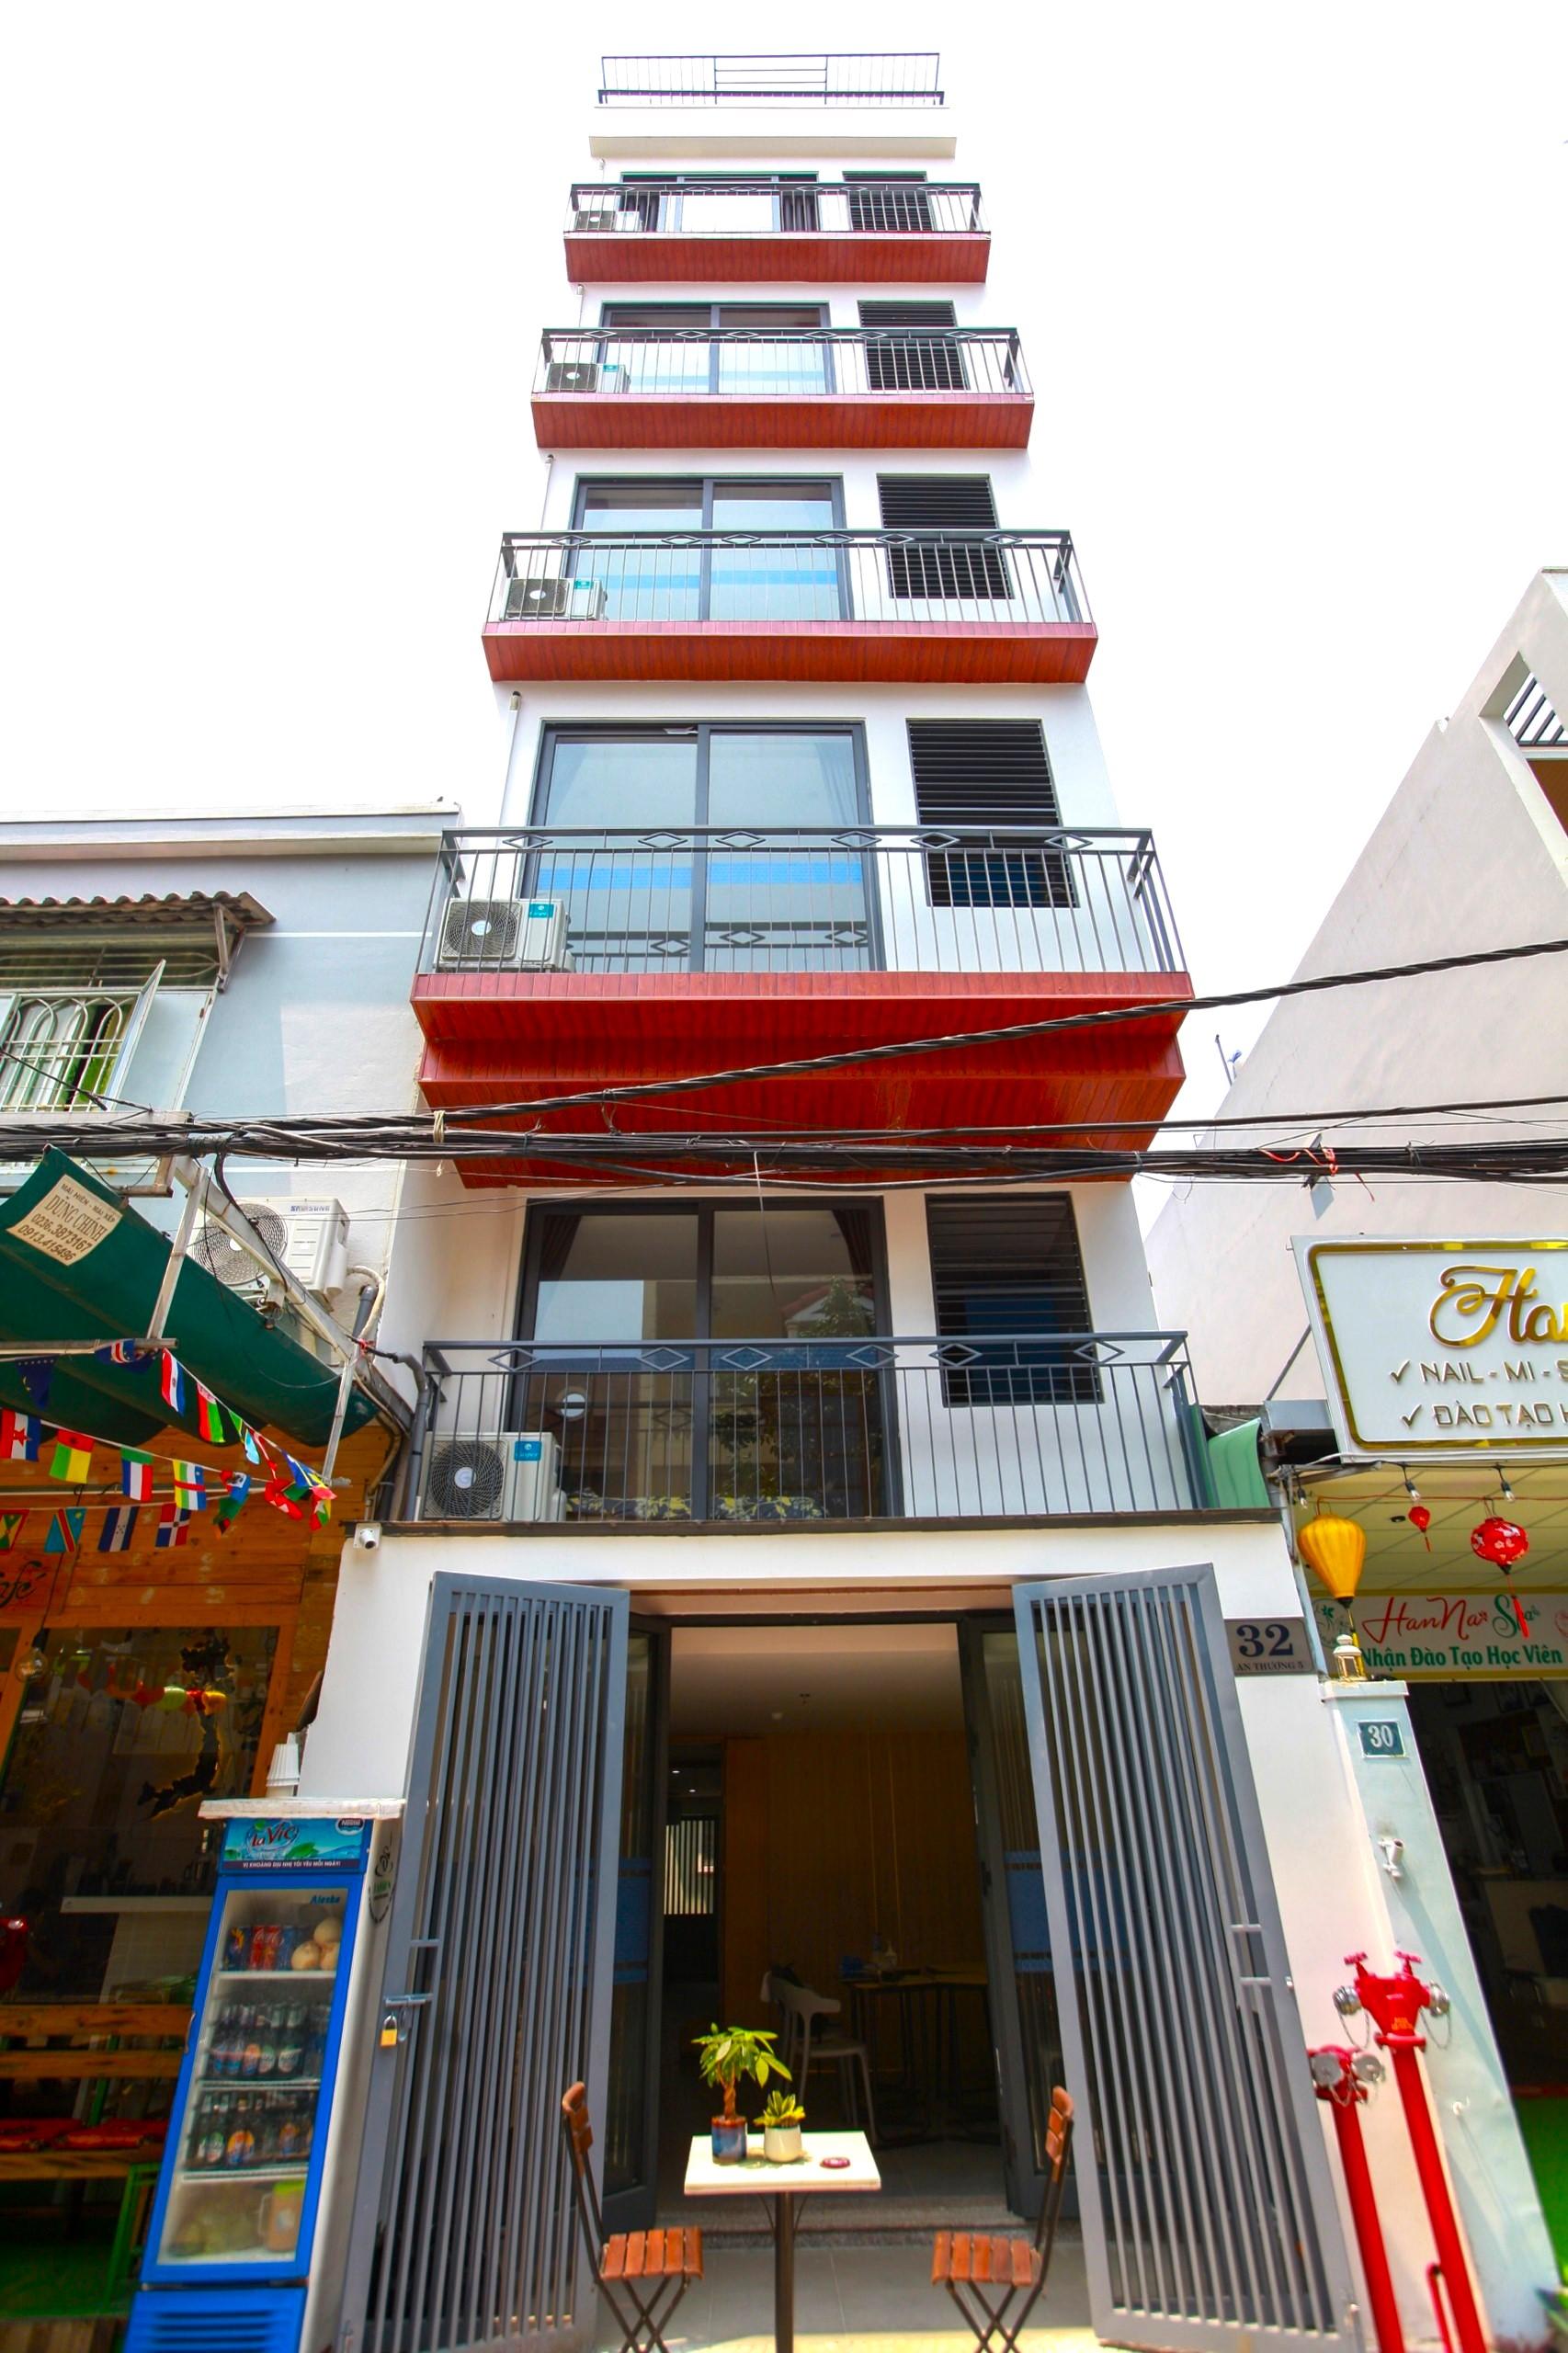 An Thuong 5 通りにあるアパートの６階建ての販売